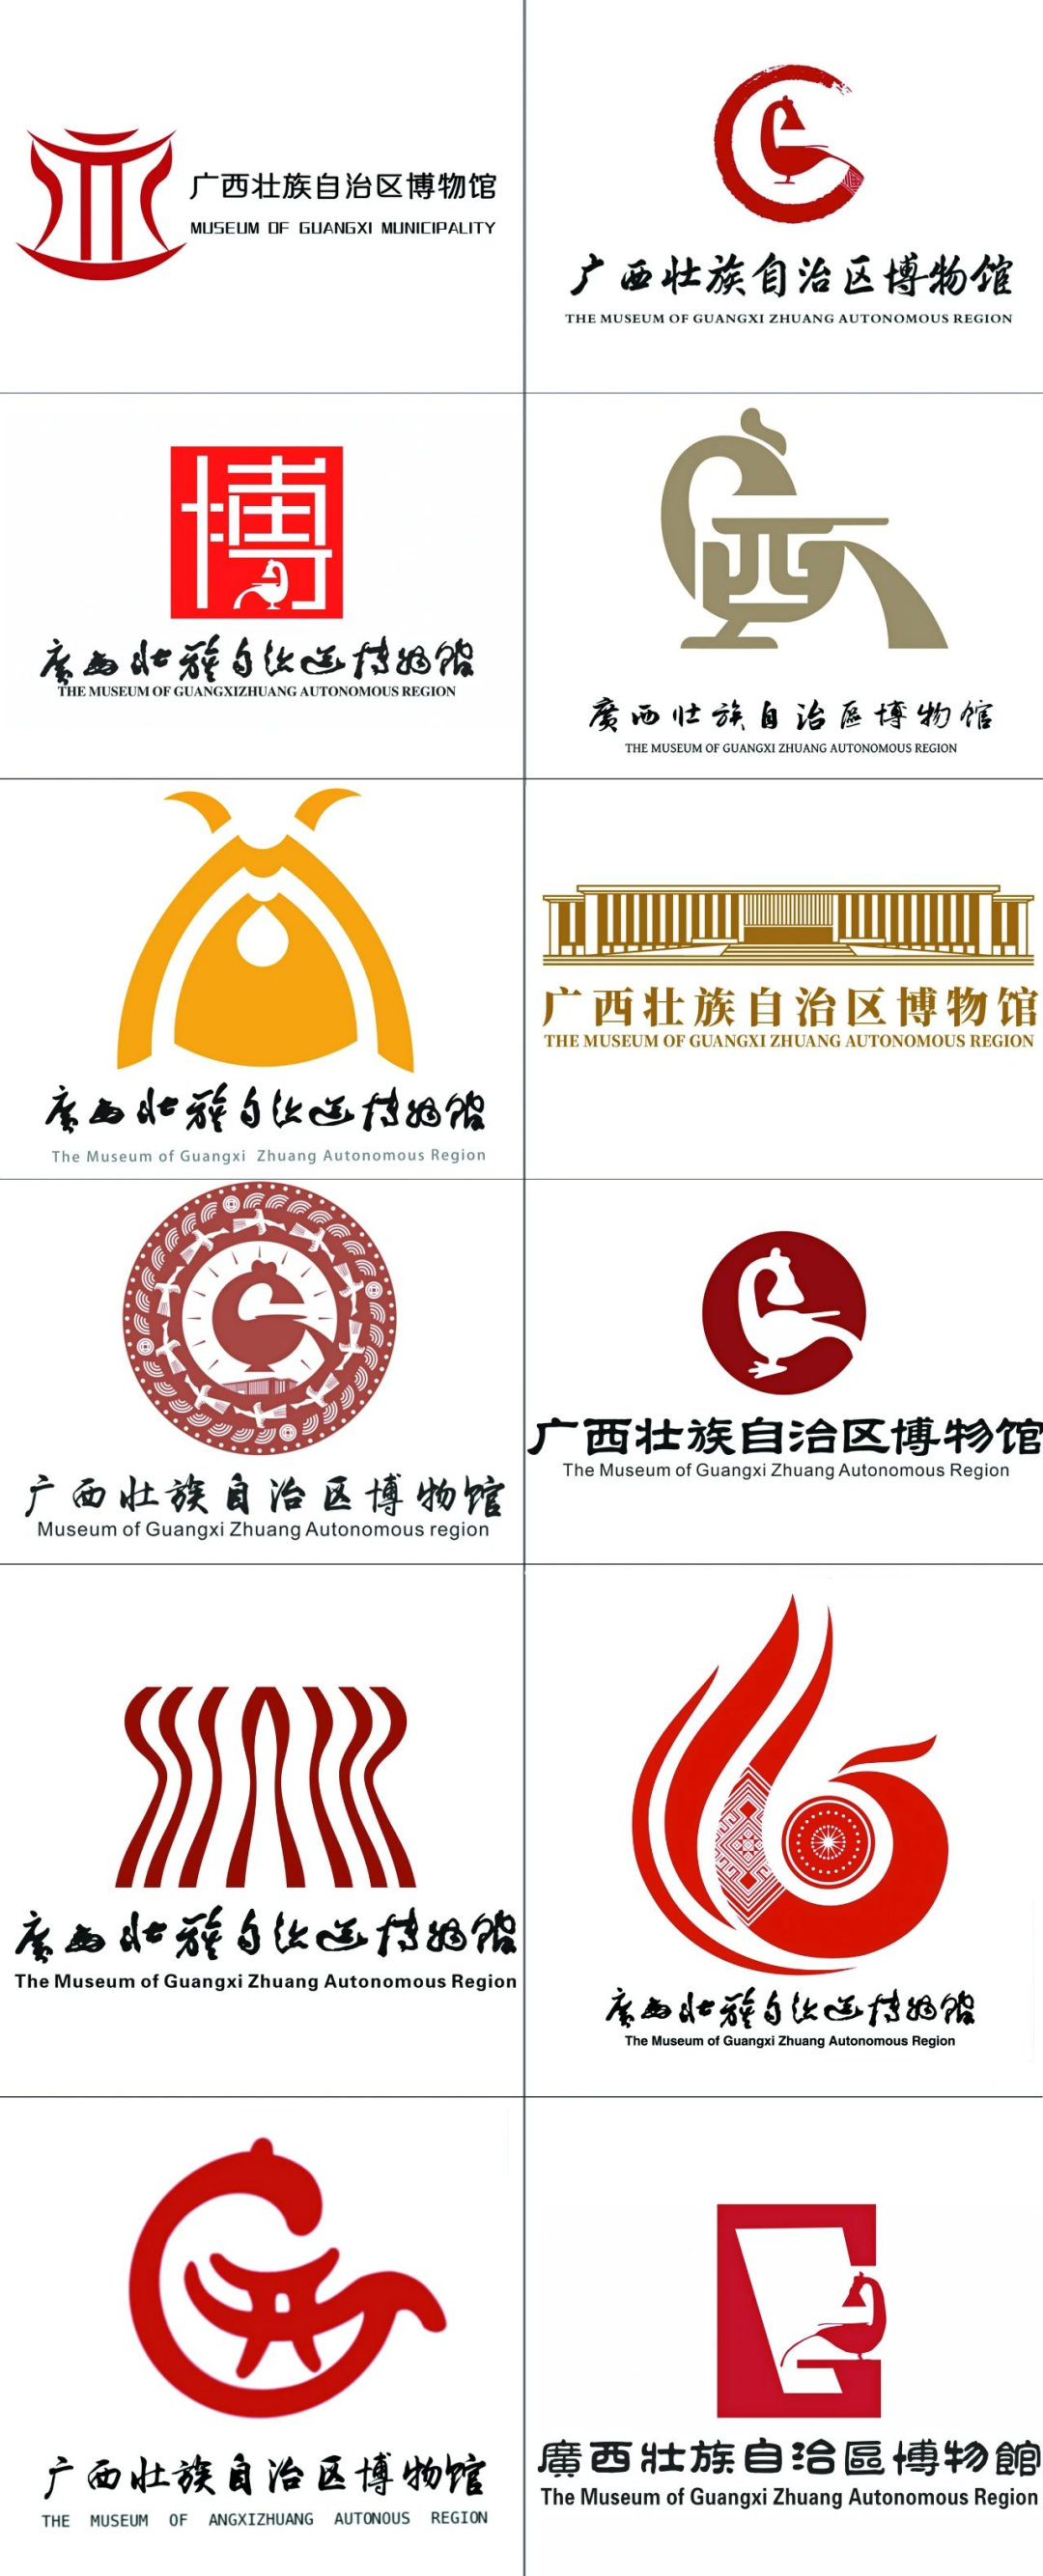 广西壮族自治区博物馆logo征集投票